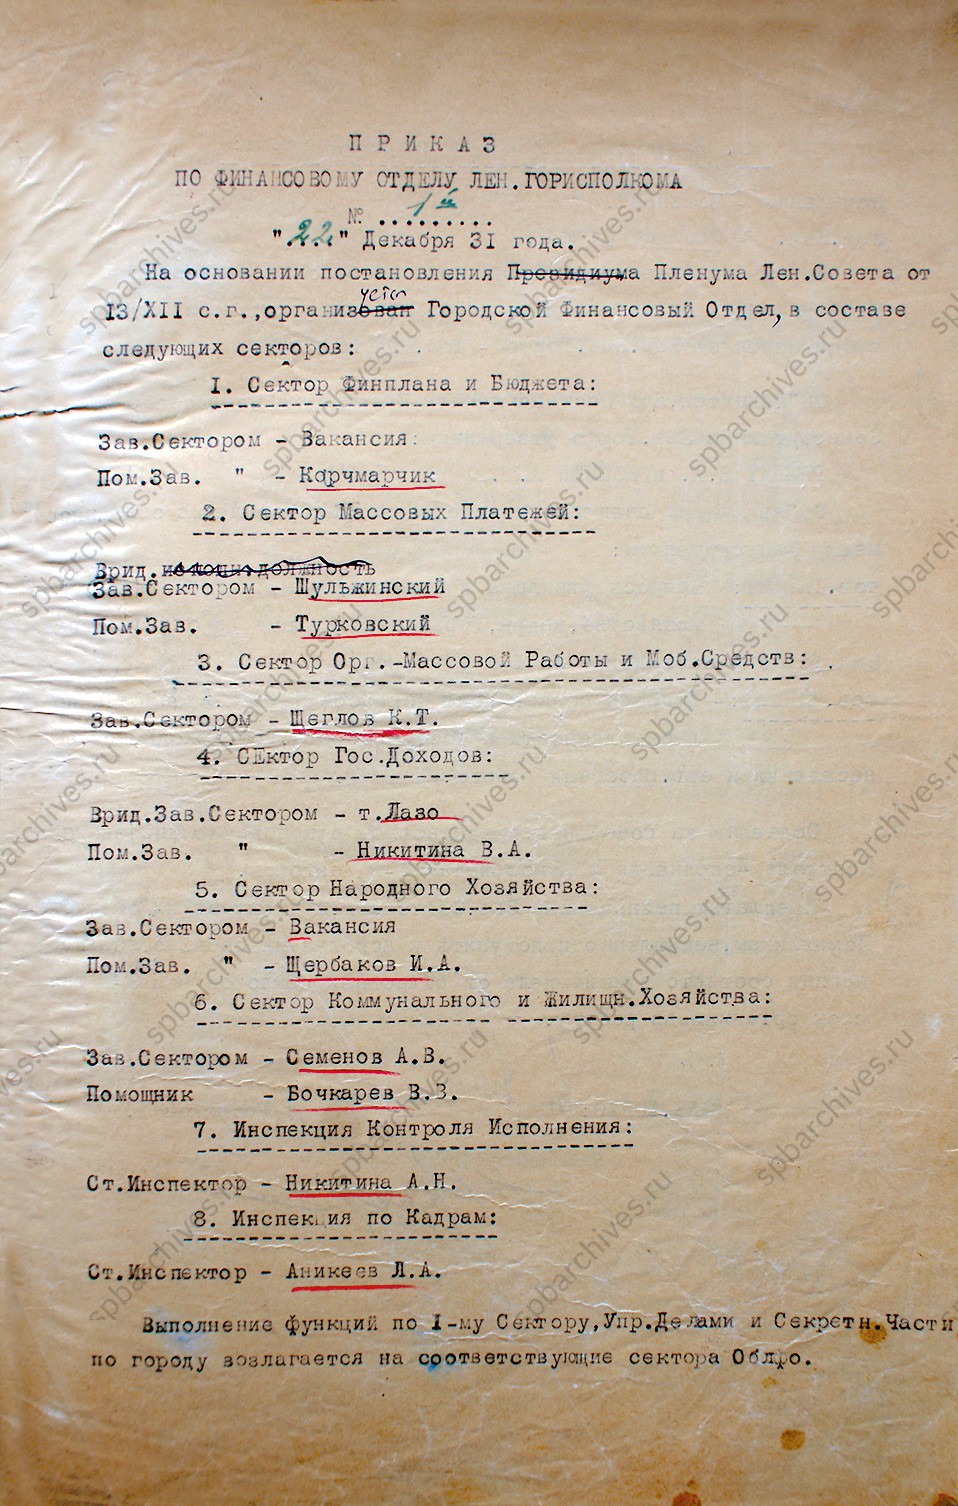 Приказ по личному составу Ленгорфинотдела от 22 декабря 1931 г.<br />
<em>Объединённый ведомственный архив Комитета финансов Санкт‑Петербурга.<br />
Ф.1. Оп.1. Д.1. Л.1, 1об.</em>